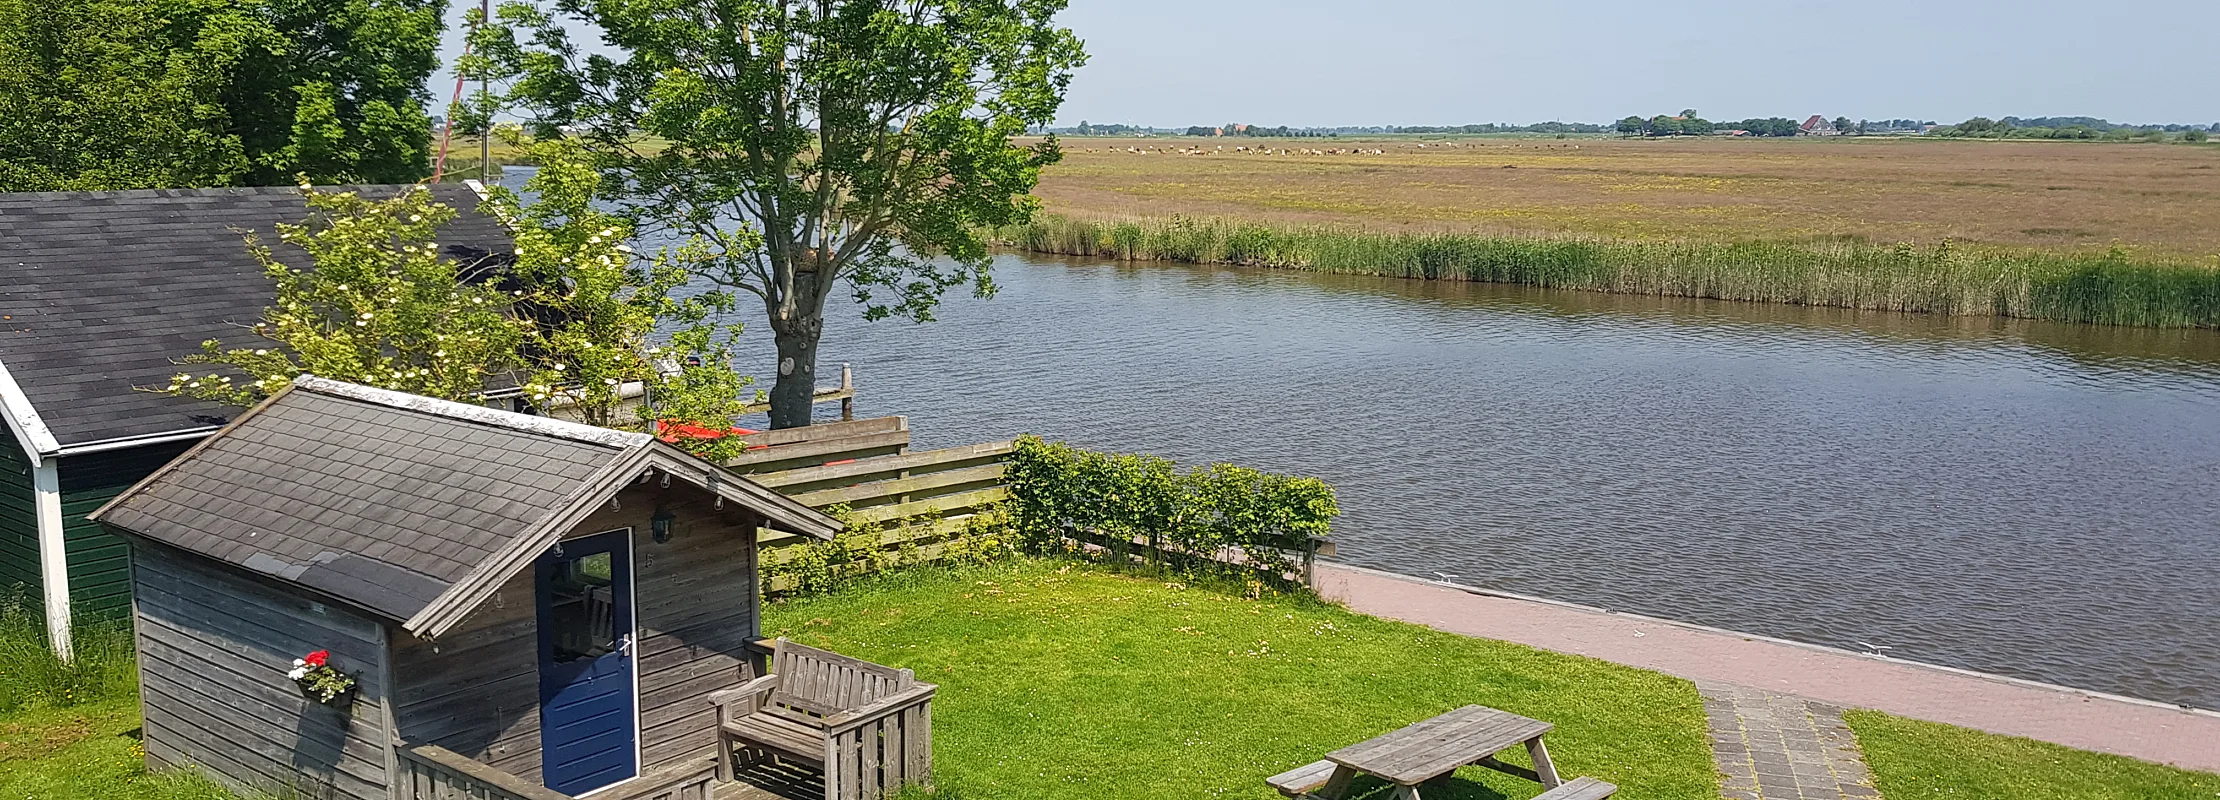 Beschikbare trekkershut aan het water in Friesland